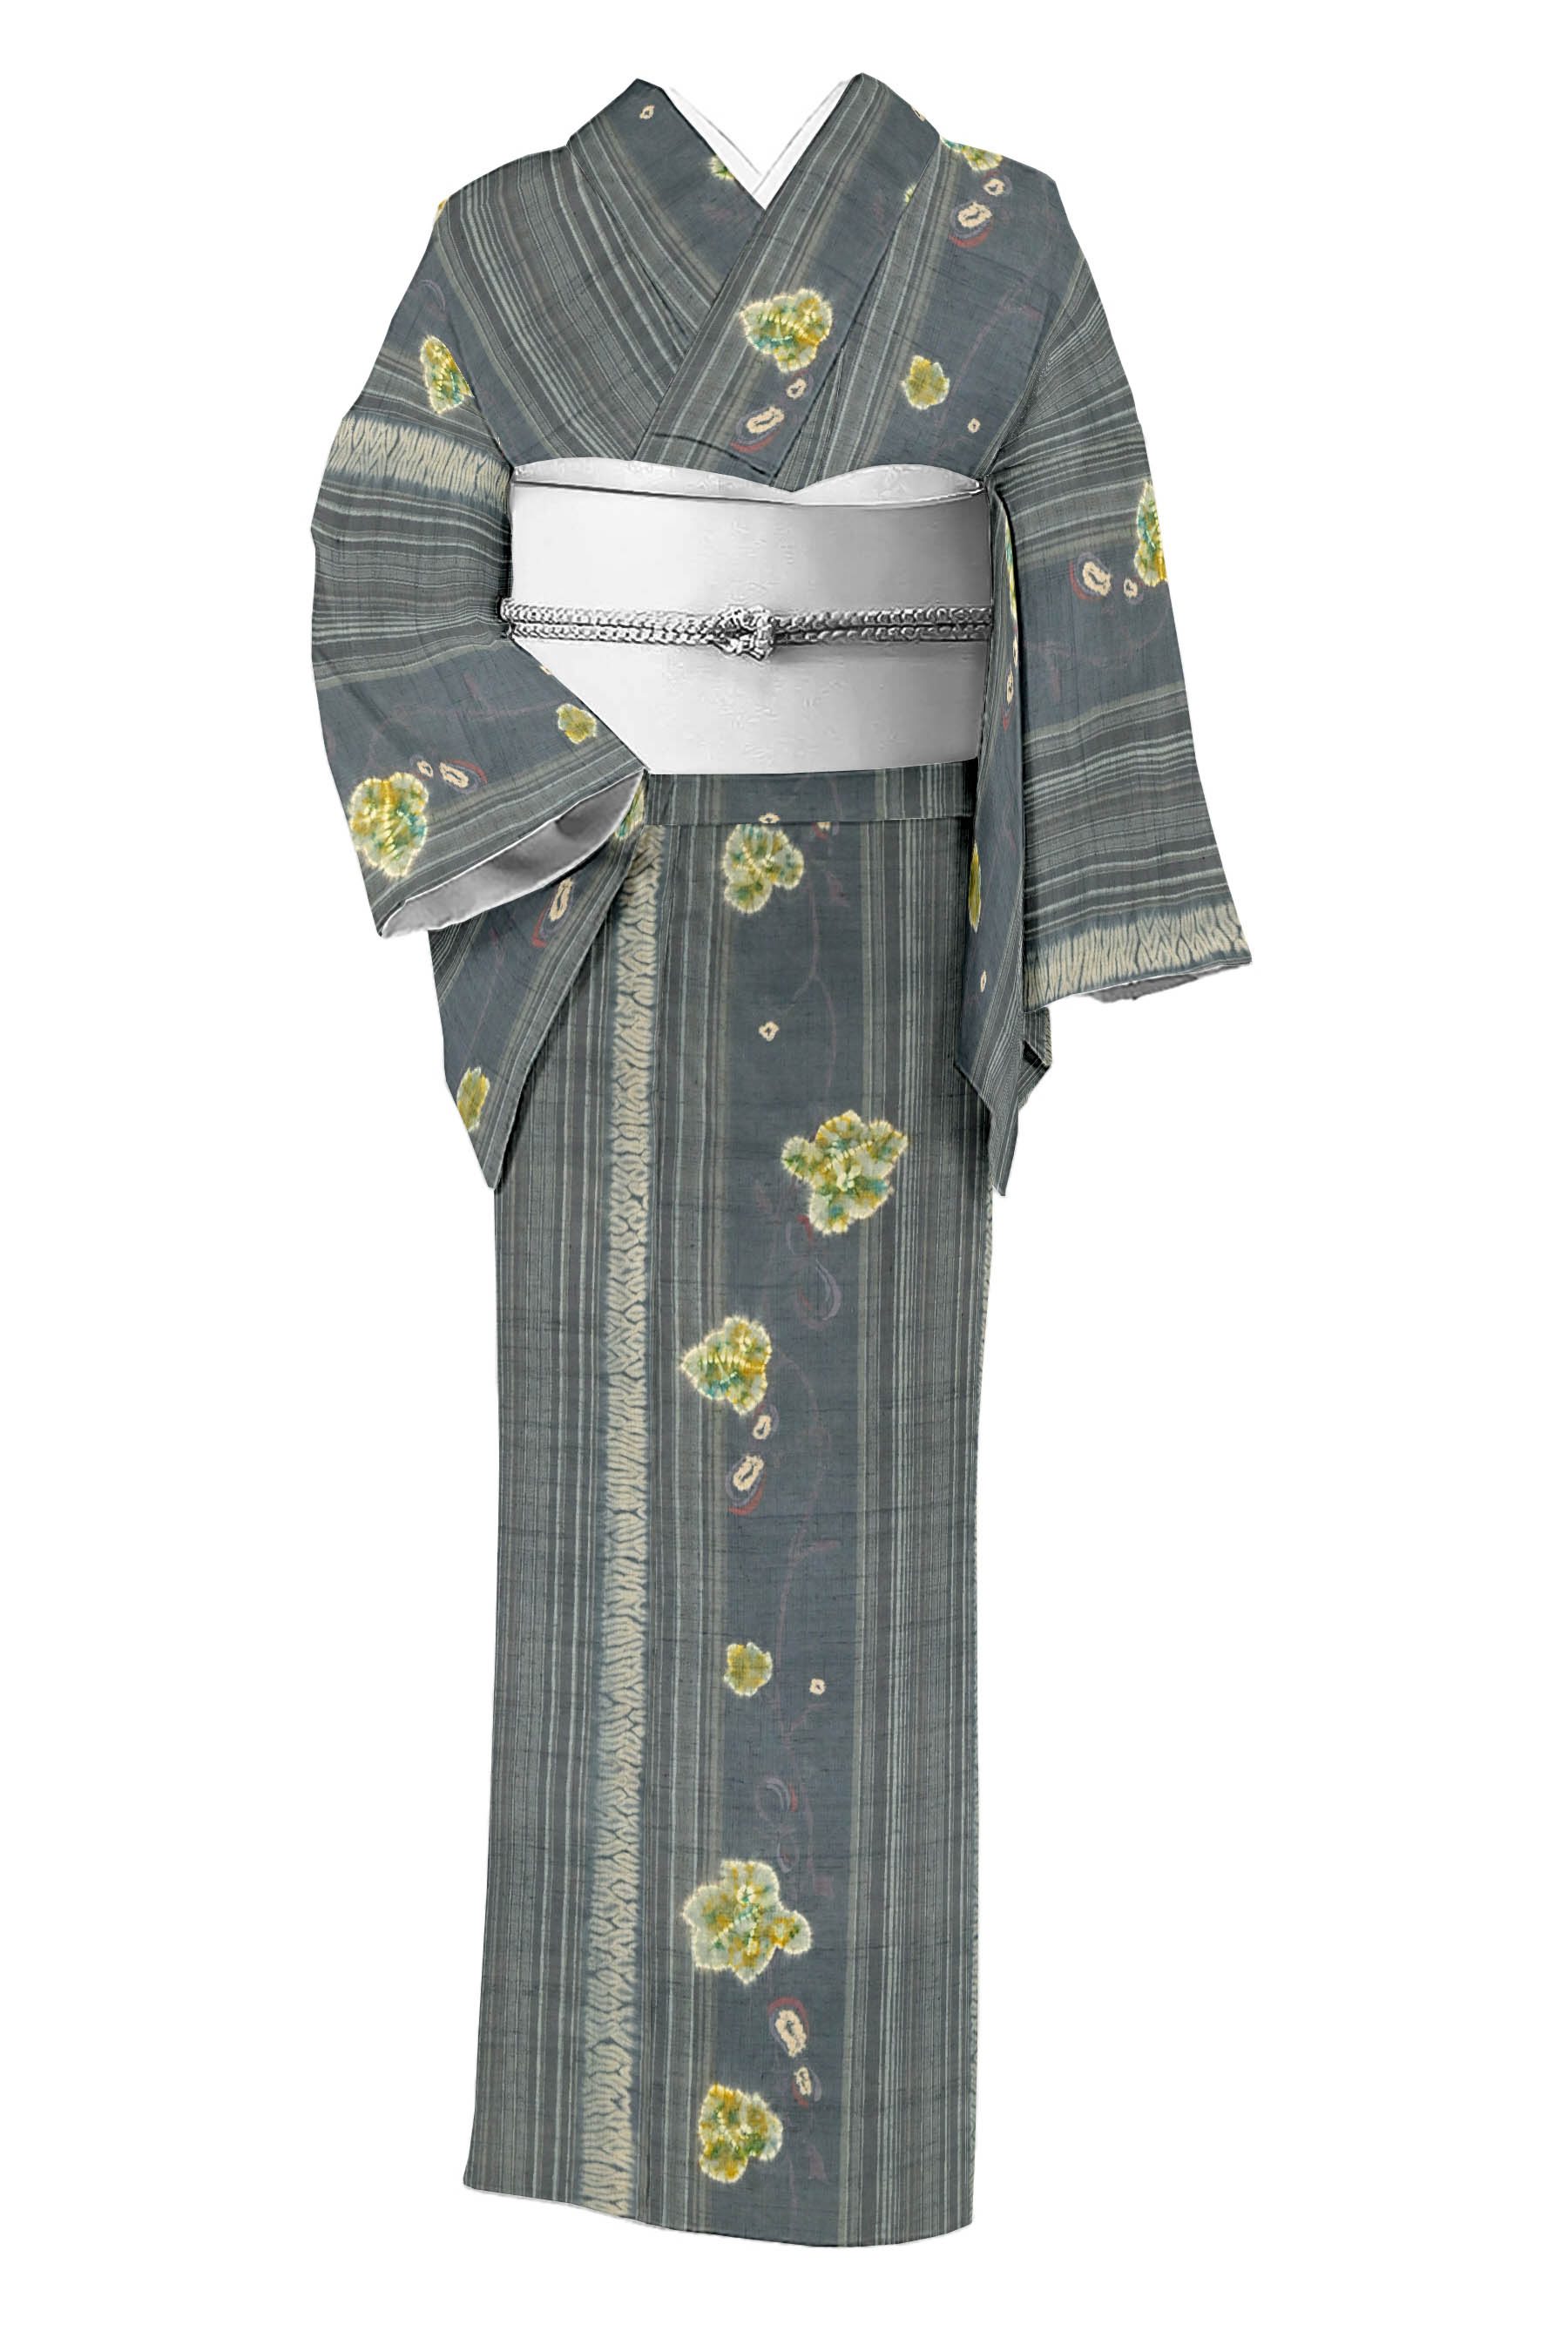 着物のわびさび紬紬着物 伝統工芸作家 七代目吉澤与市 ガード加工 しつけ K-3435